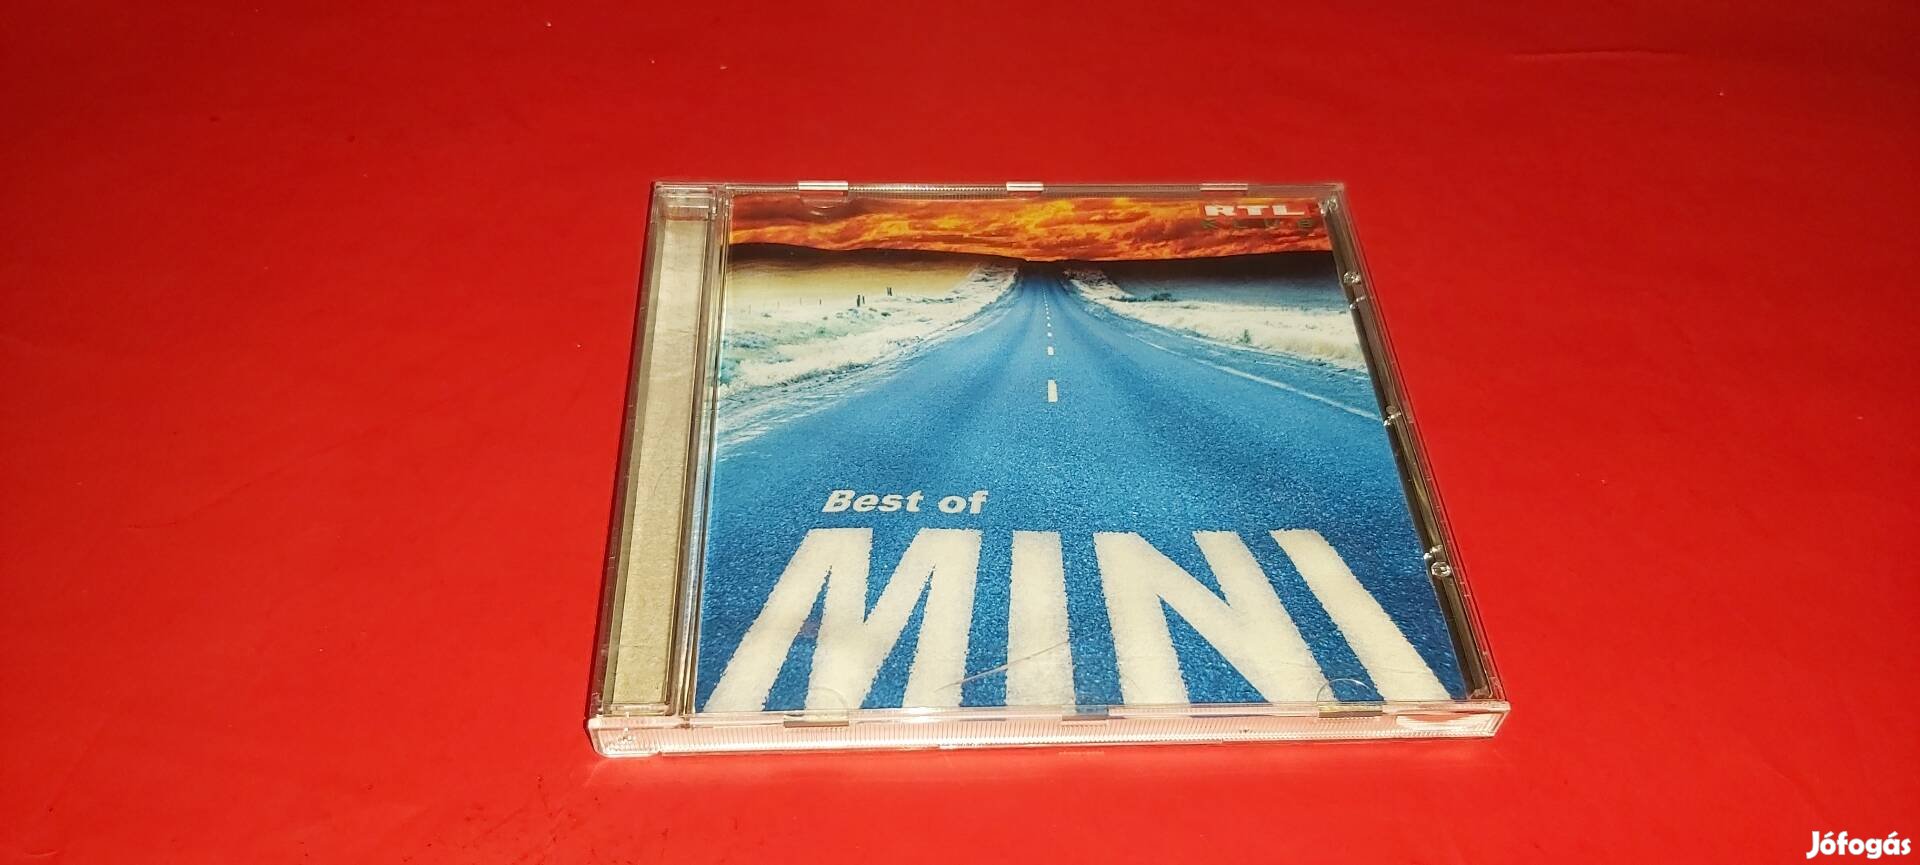 Mini Best of Mini Cd 2002